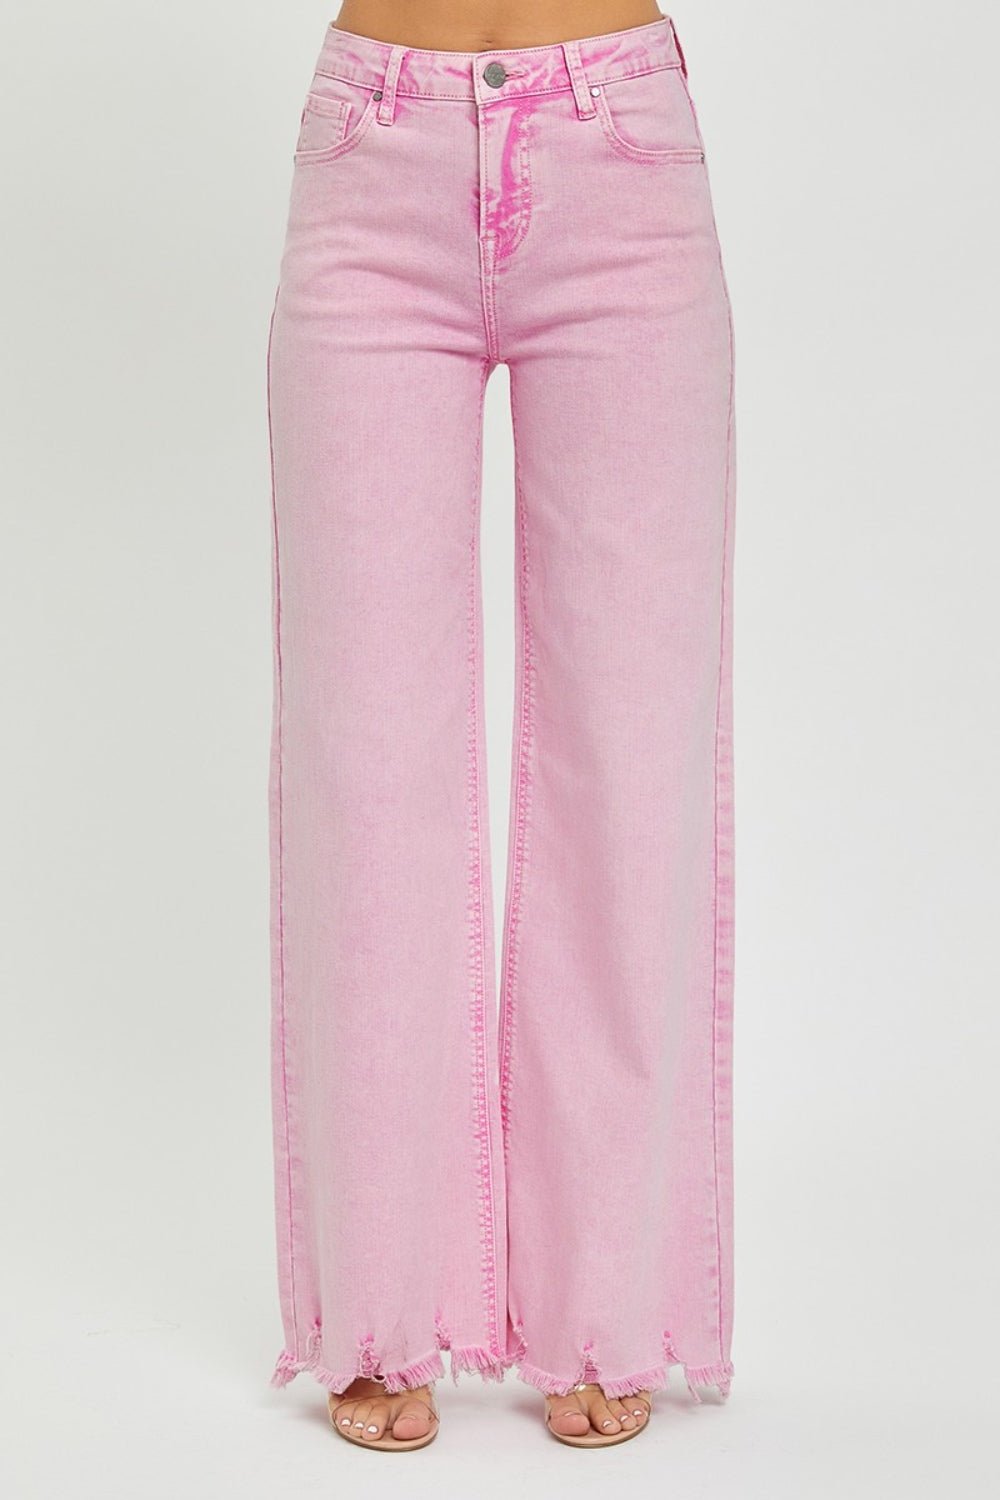 High Rise Wide Leg Jeans in Acid PinkJeansRISEN